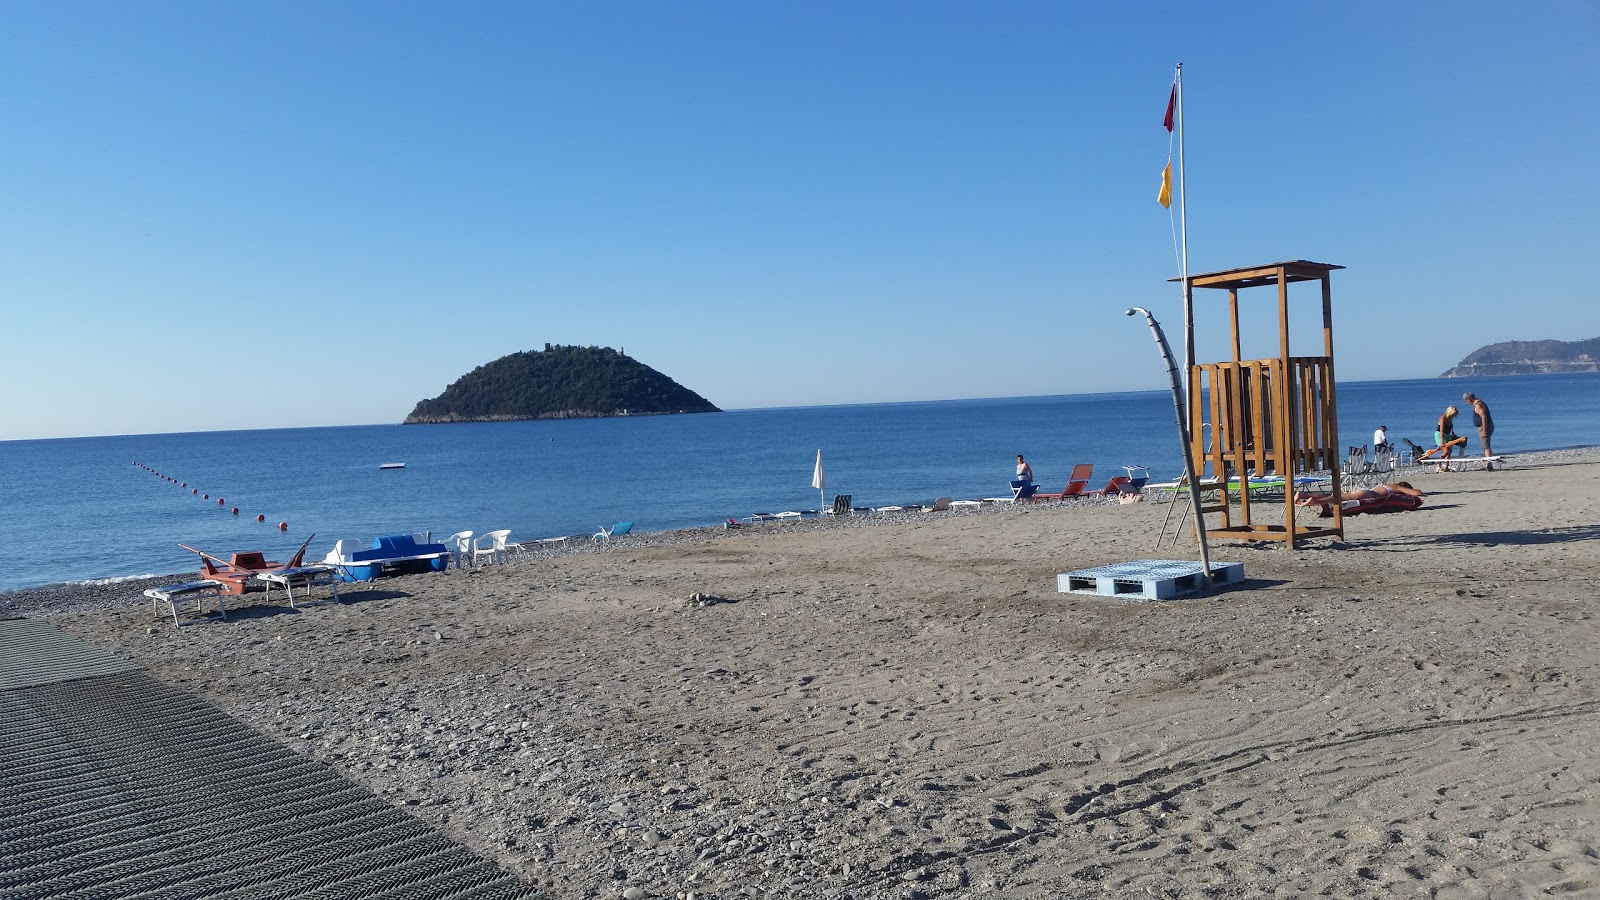 Capo Lena beach'in fotoğrafı geniş plaj ile birlikte